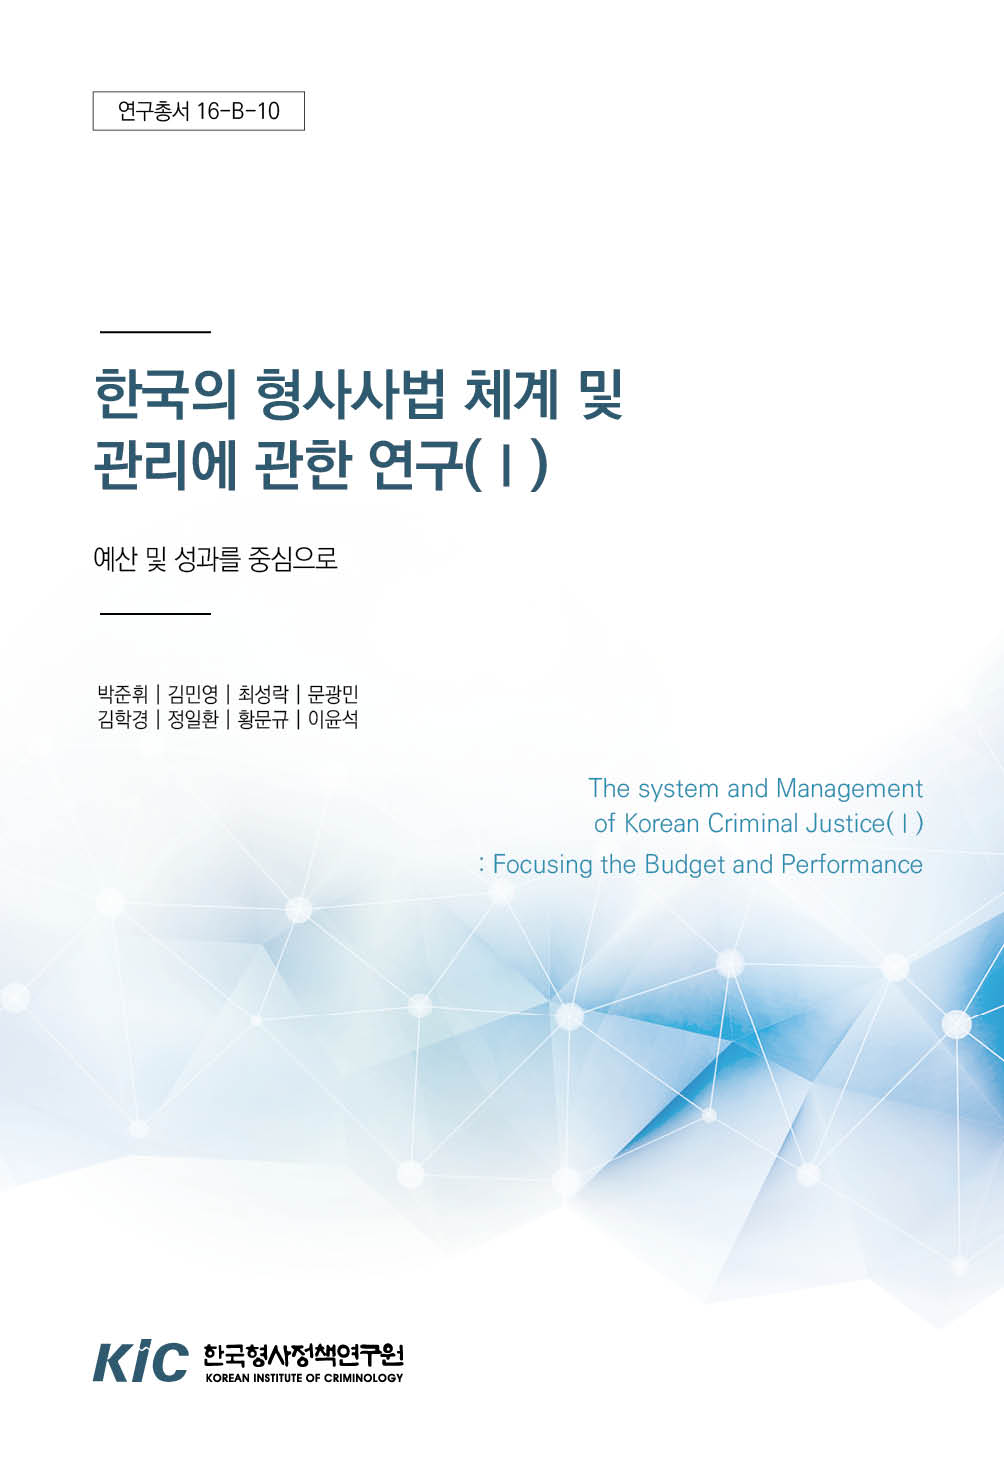 한국의 형사사법 체계 및 관리에 관한 연구(Ⅰ) : 예산 및 성과를 중심으로